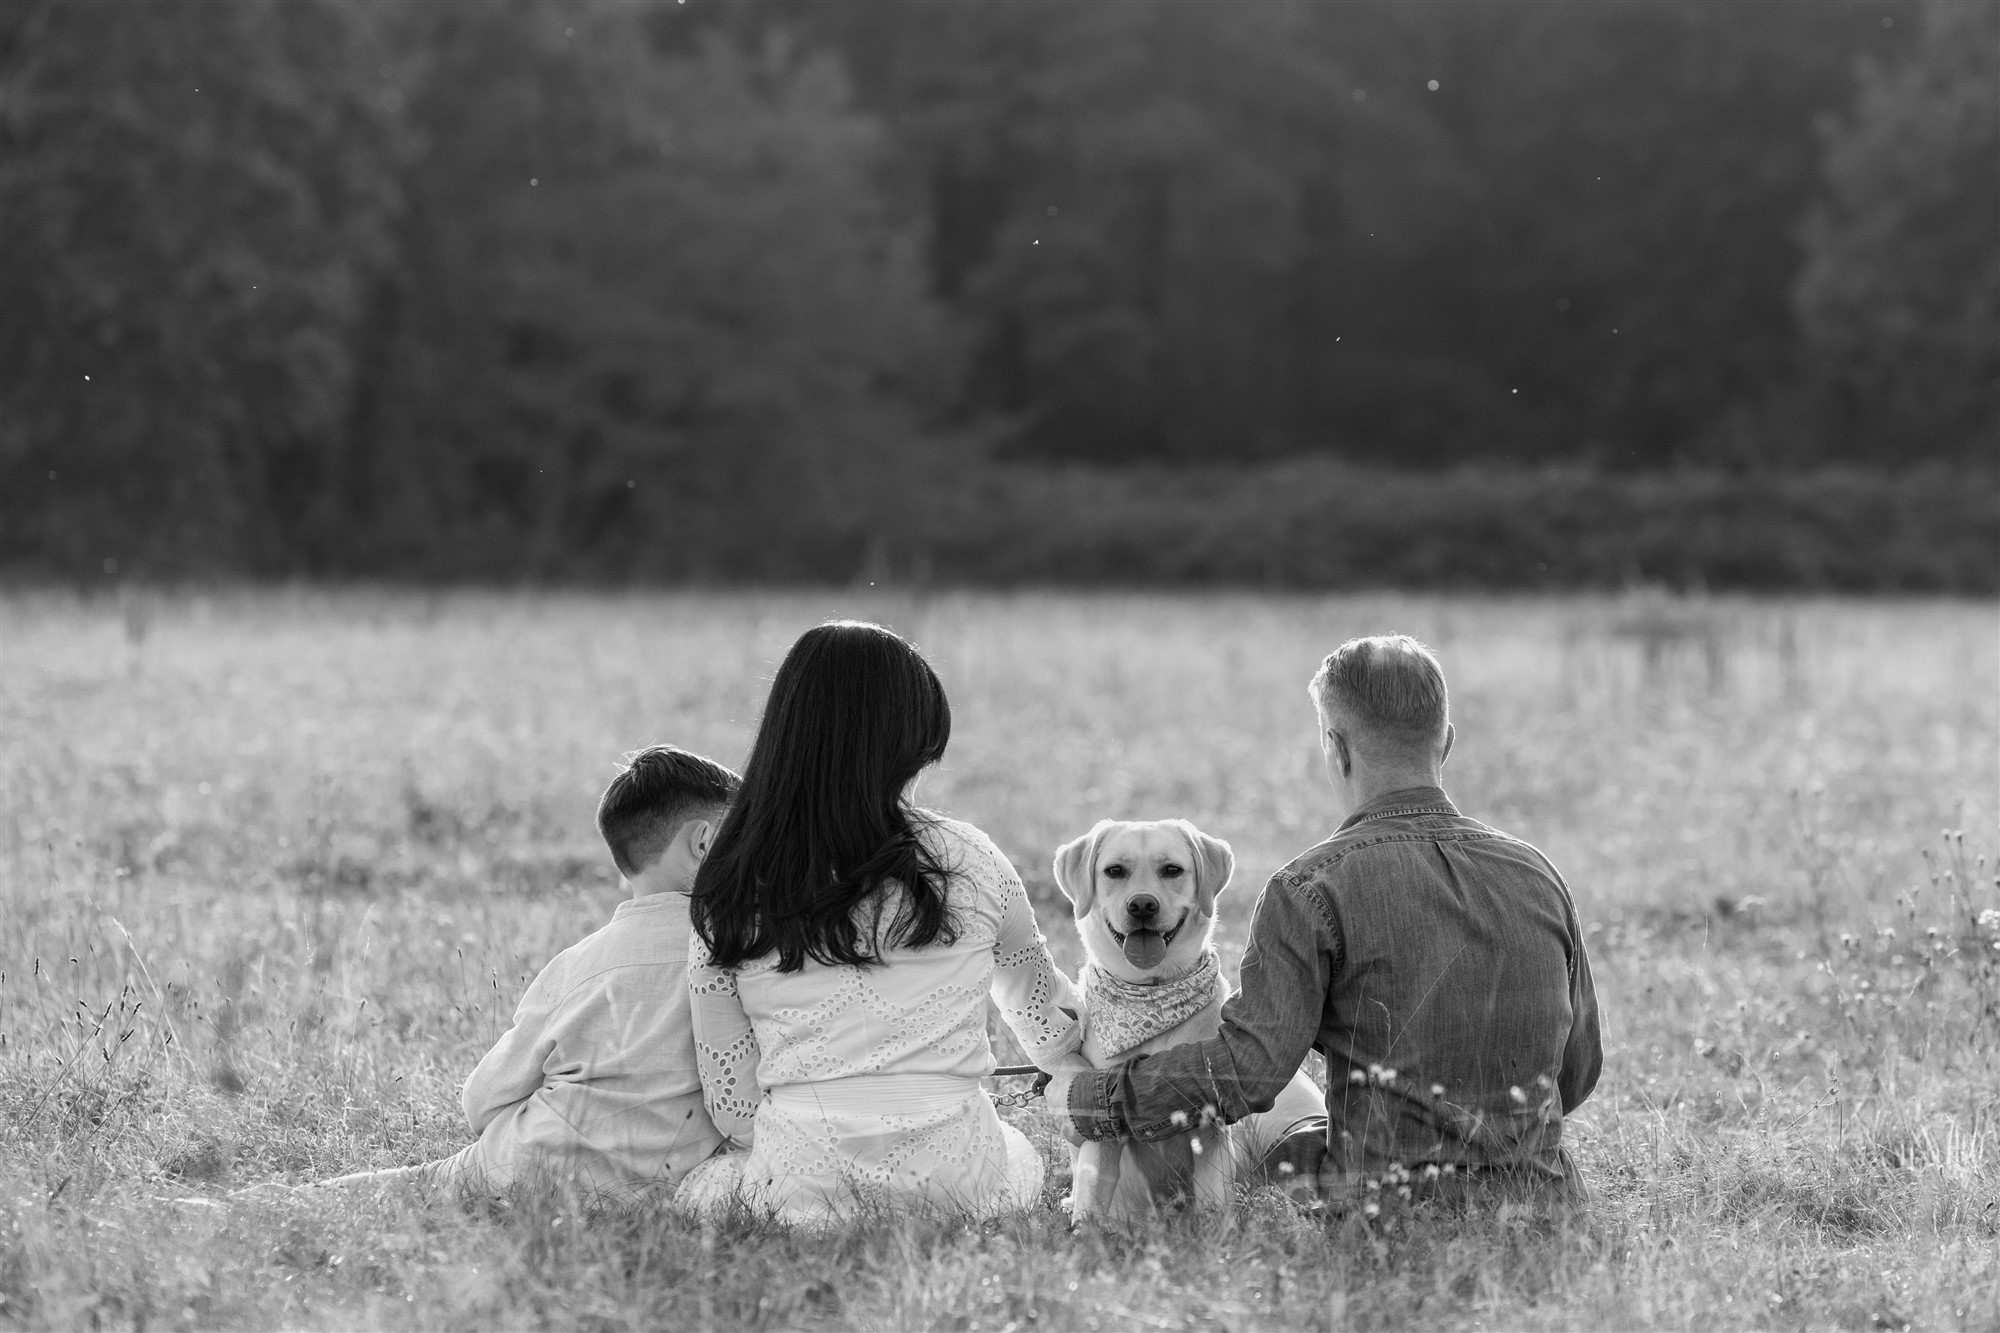 Die Familie und der Hund beim Familienfotoshooting in der Natur - Fotografin Nicole Kym von Nicole.Gallery aus Basel